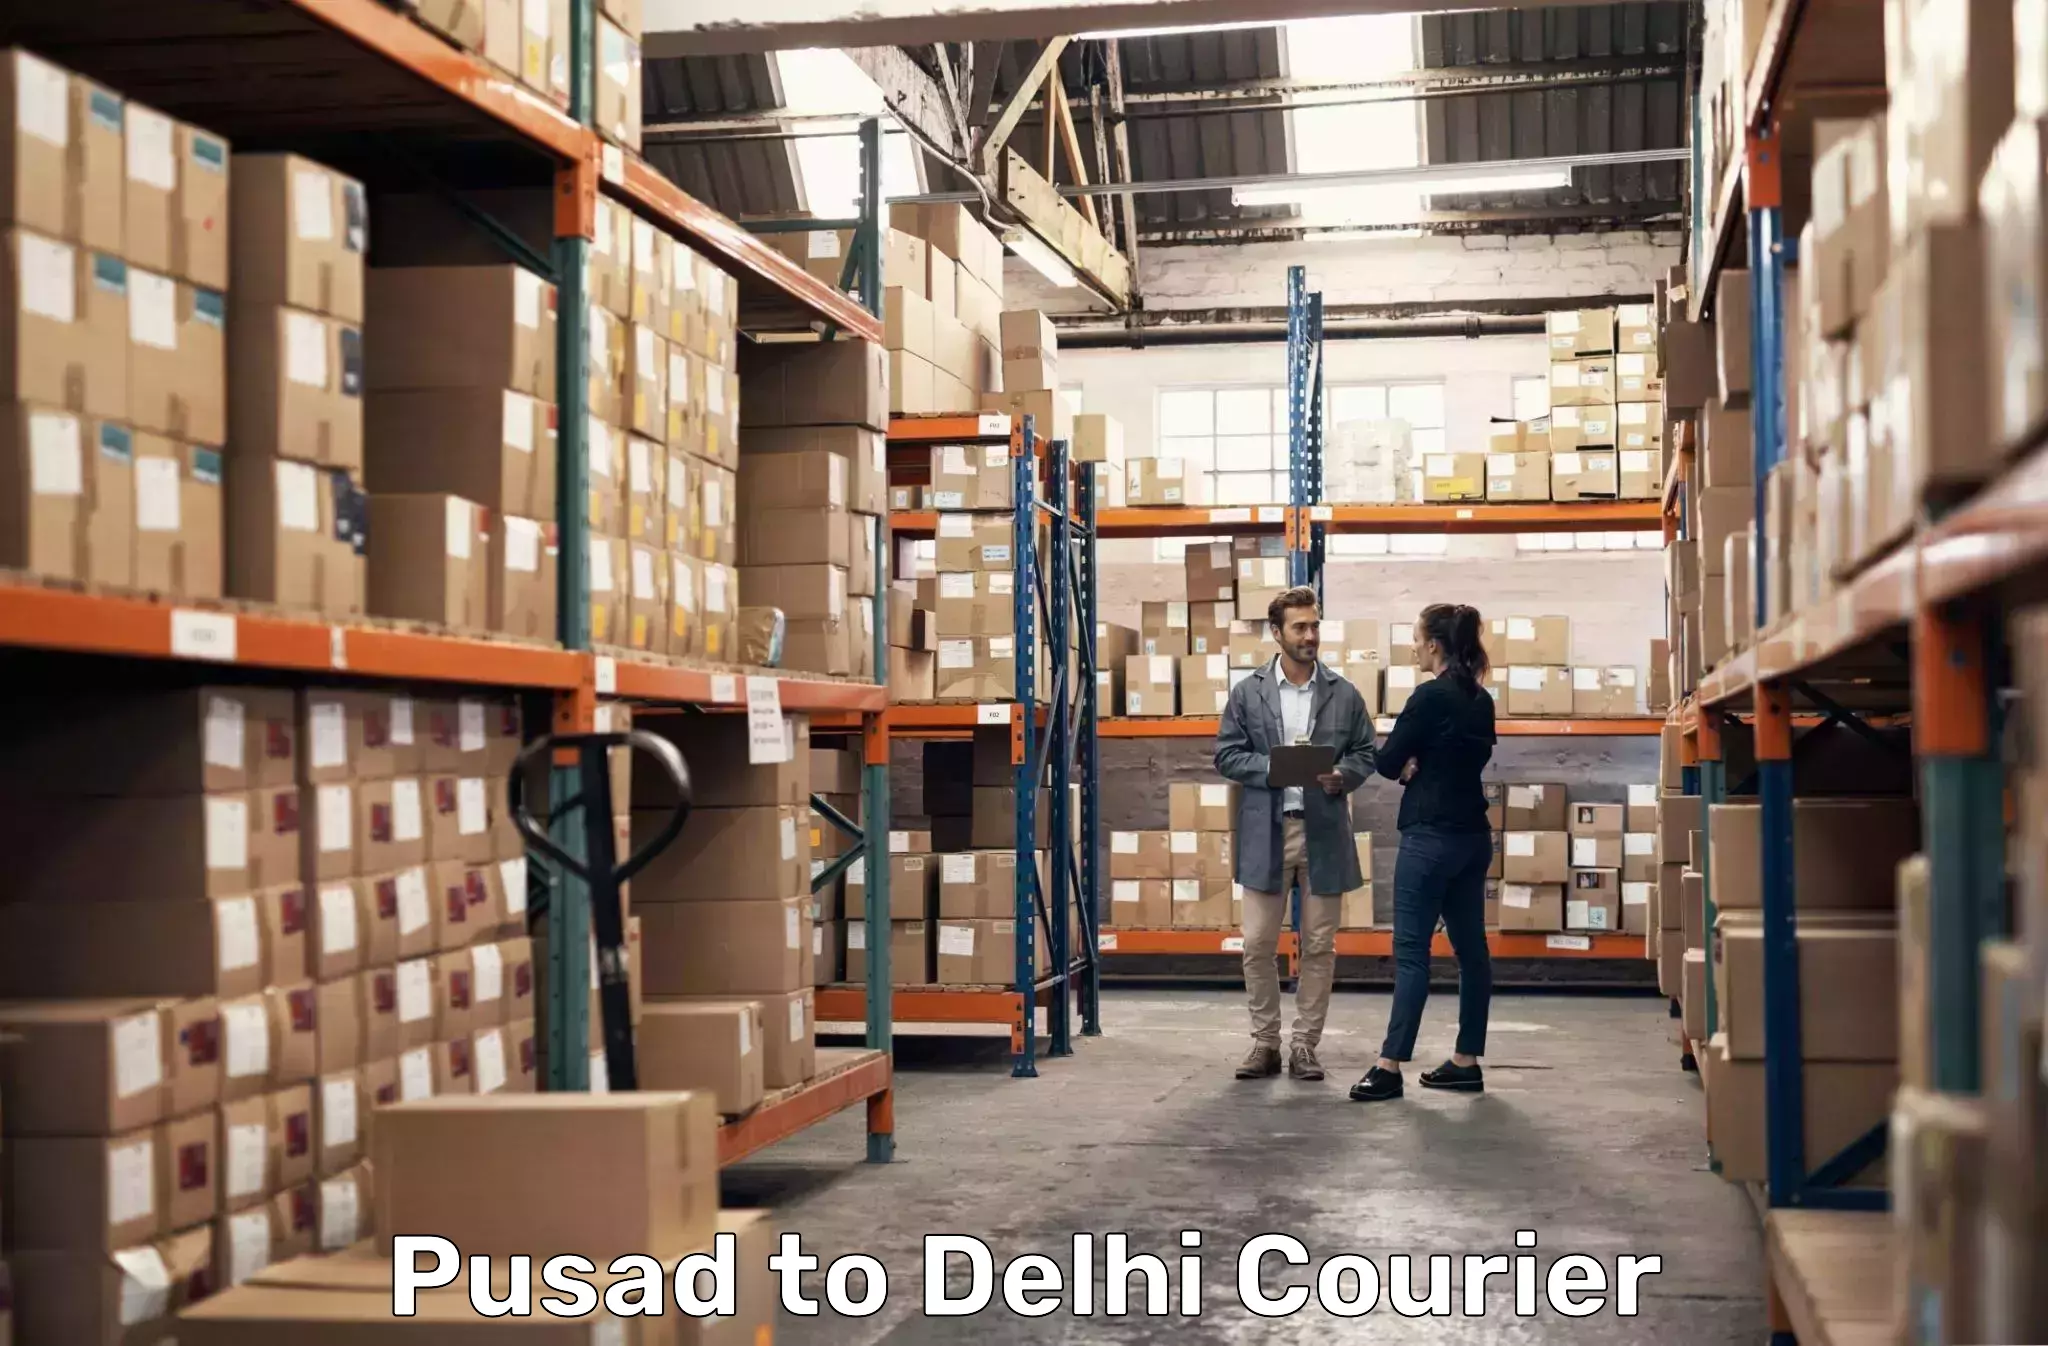 Reliable parcel services Pusad to Delhi